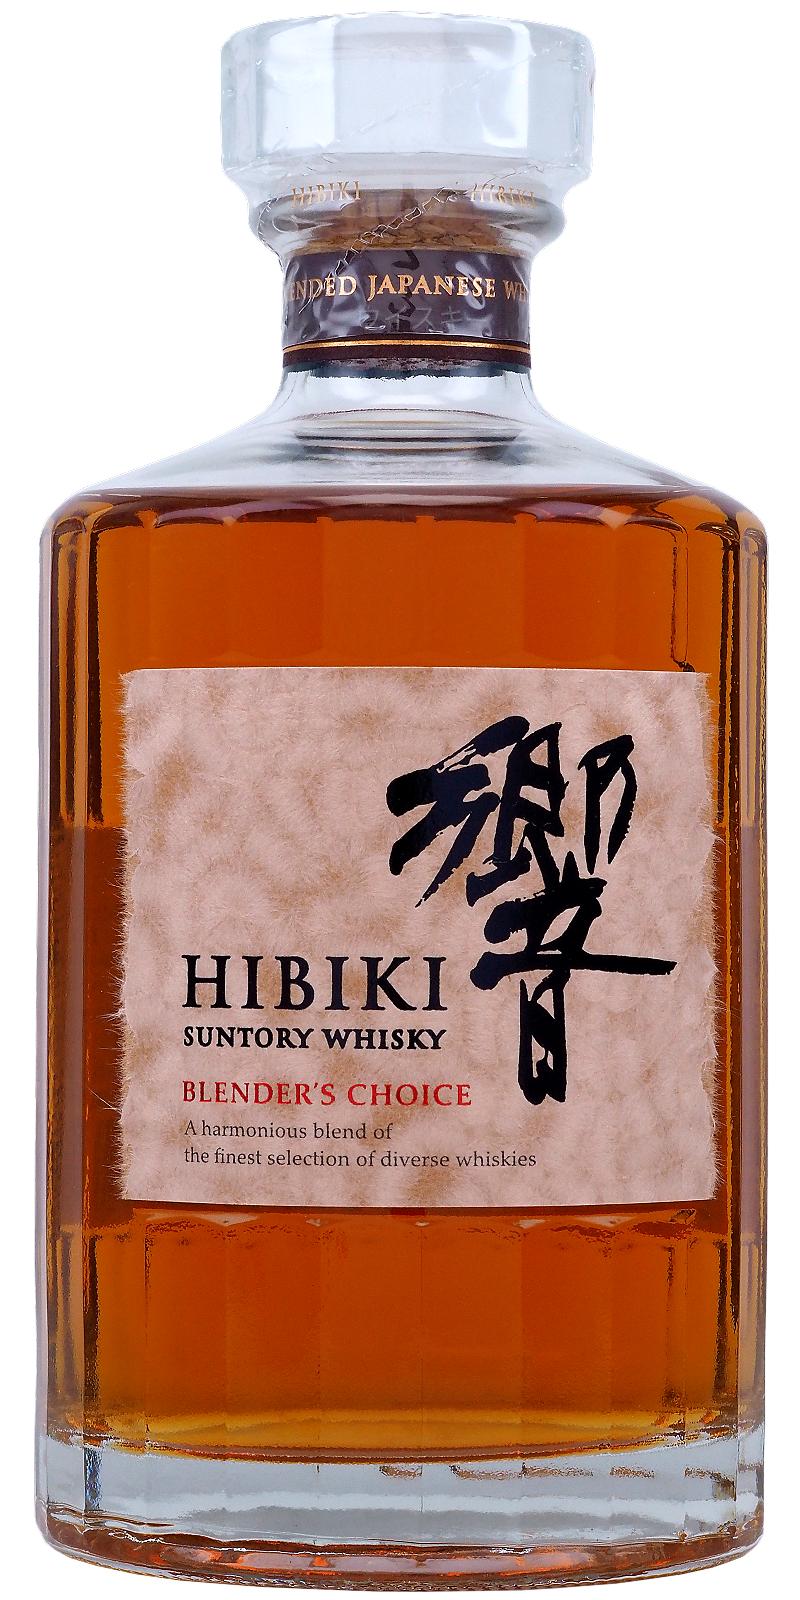 SUNTORY WHISKY HIBIKI BLENDERS CHOICE 響 - ウイスキー